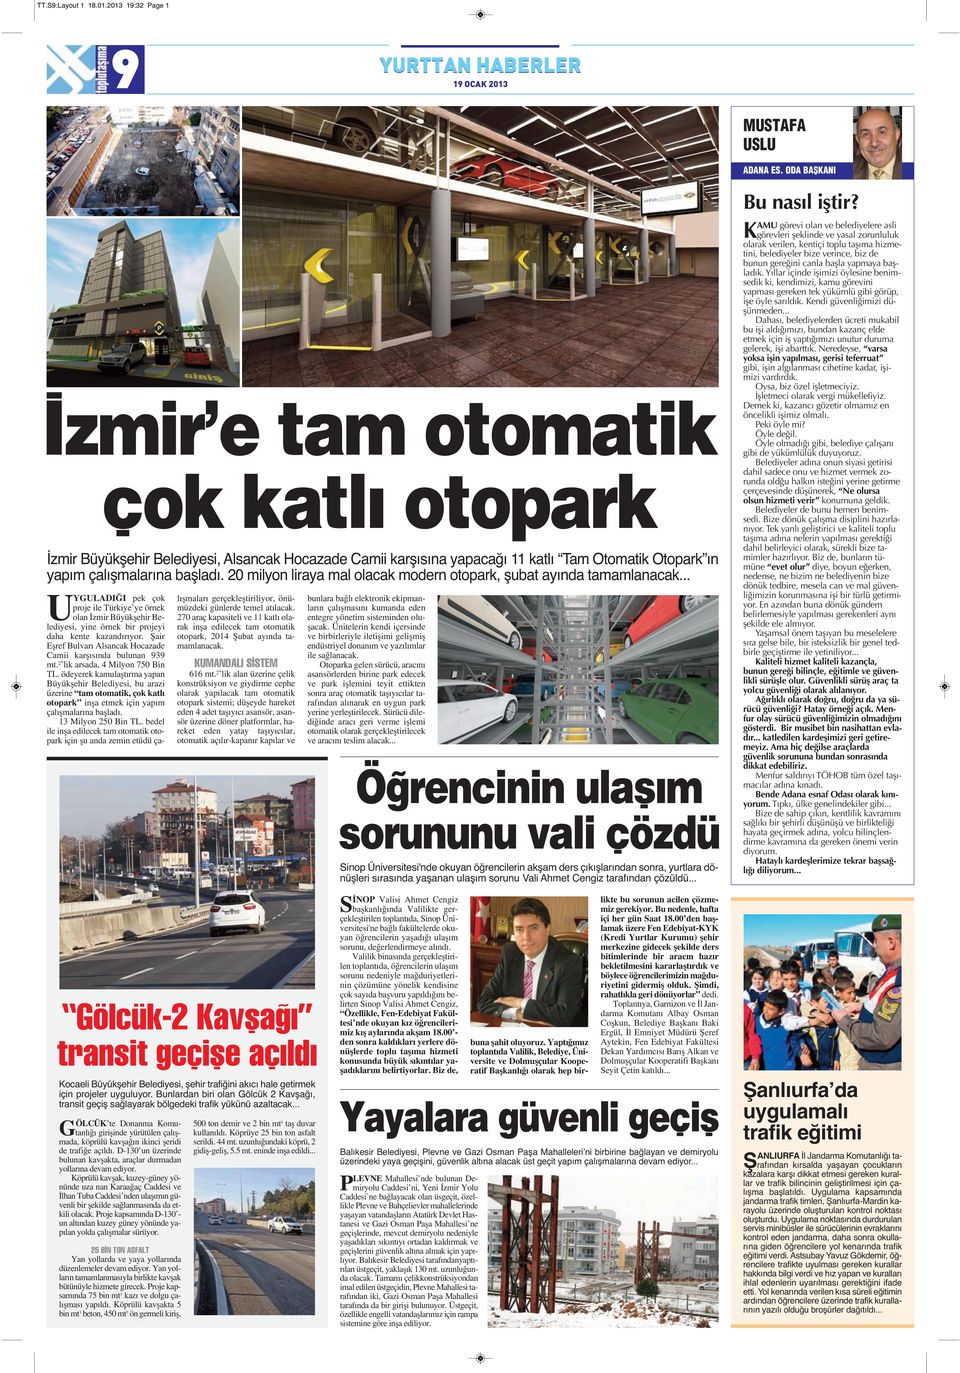 20 milyon liraya mal olacak modern otopark, şubat ayında tamamlanacak... UYGULADIĞI pek çok proje ile Türkiye ye örnek olan İzmir Büyükşehir Belediyesi, yine örnek bir projeyi daha kente kazandırıyor.